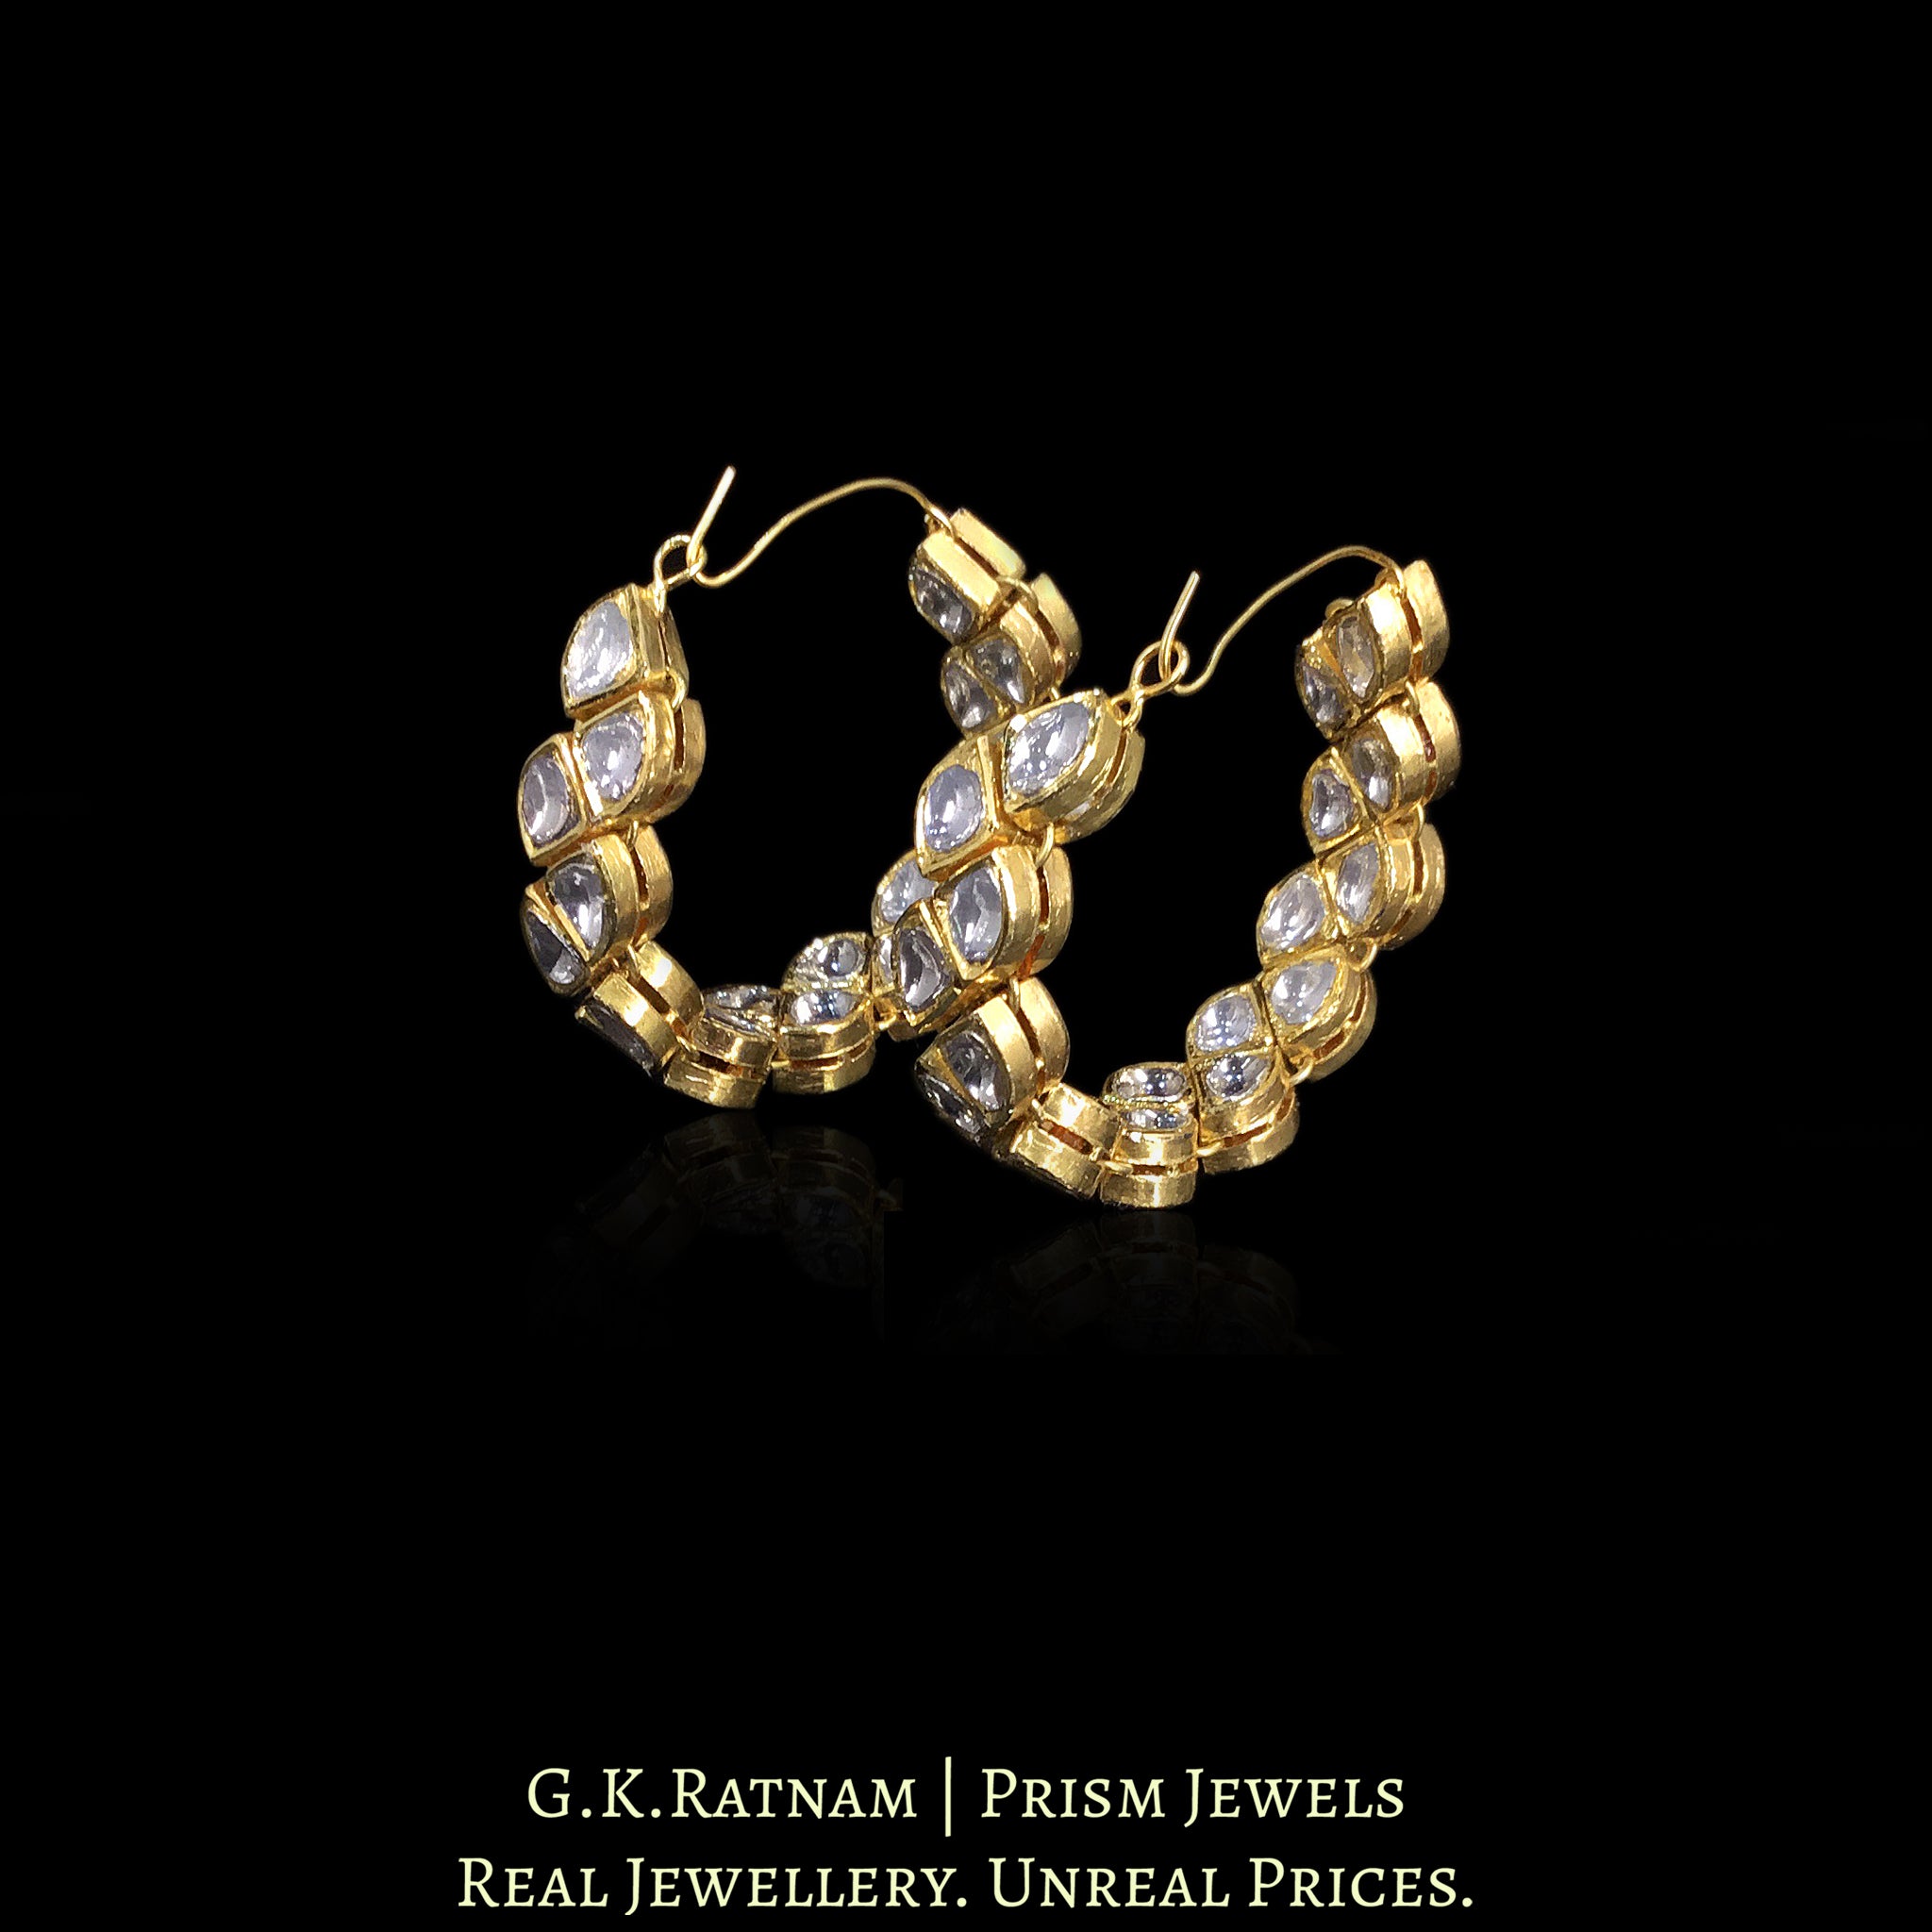 18k Gold and Diamond Polki Bali / Hoop Earring Pair